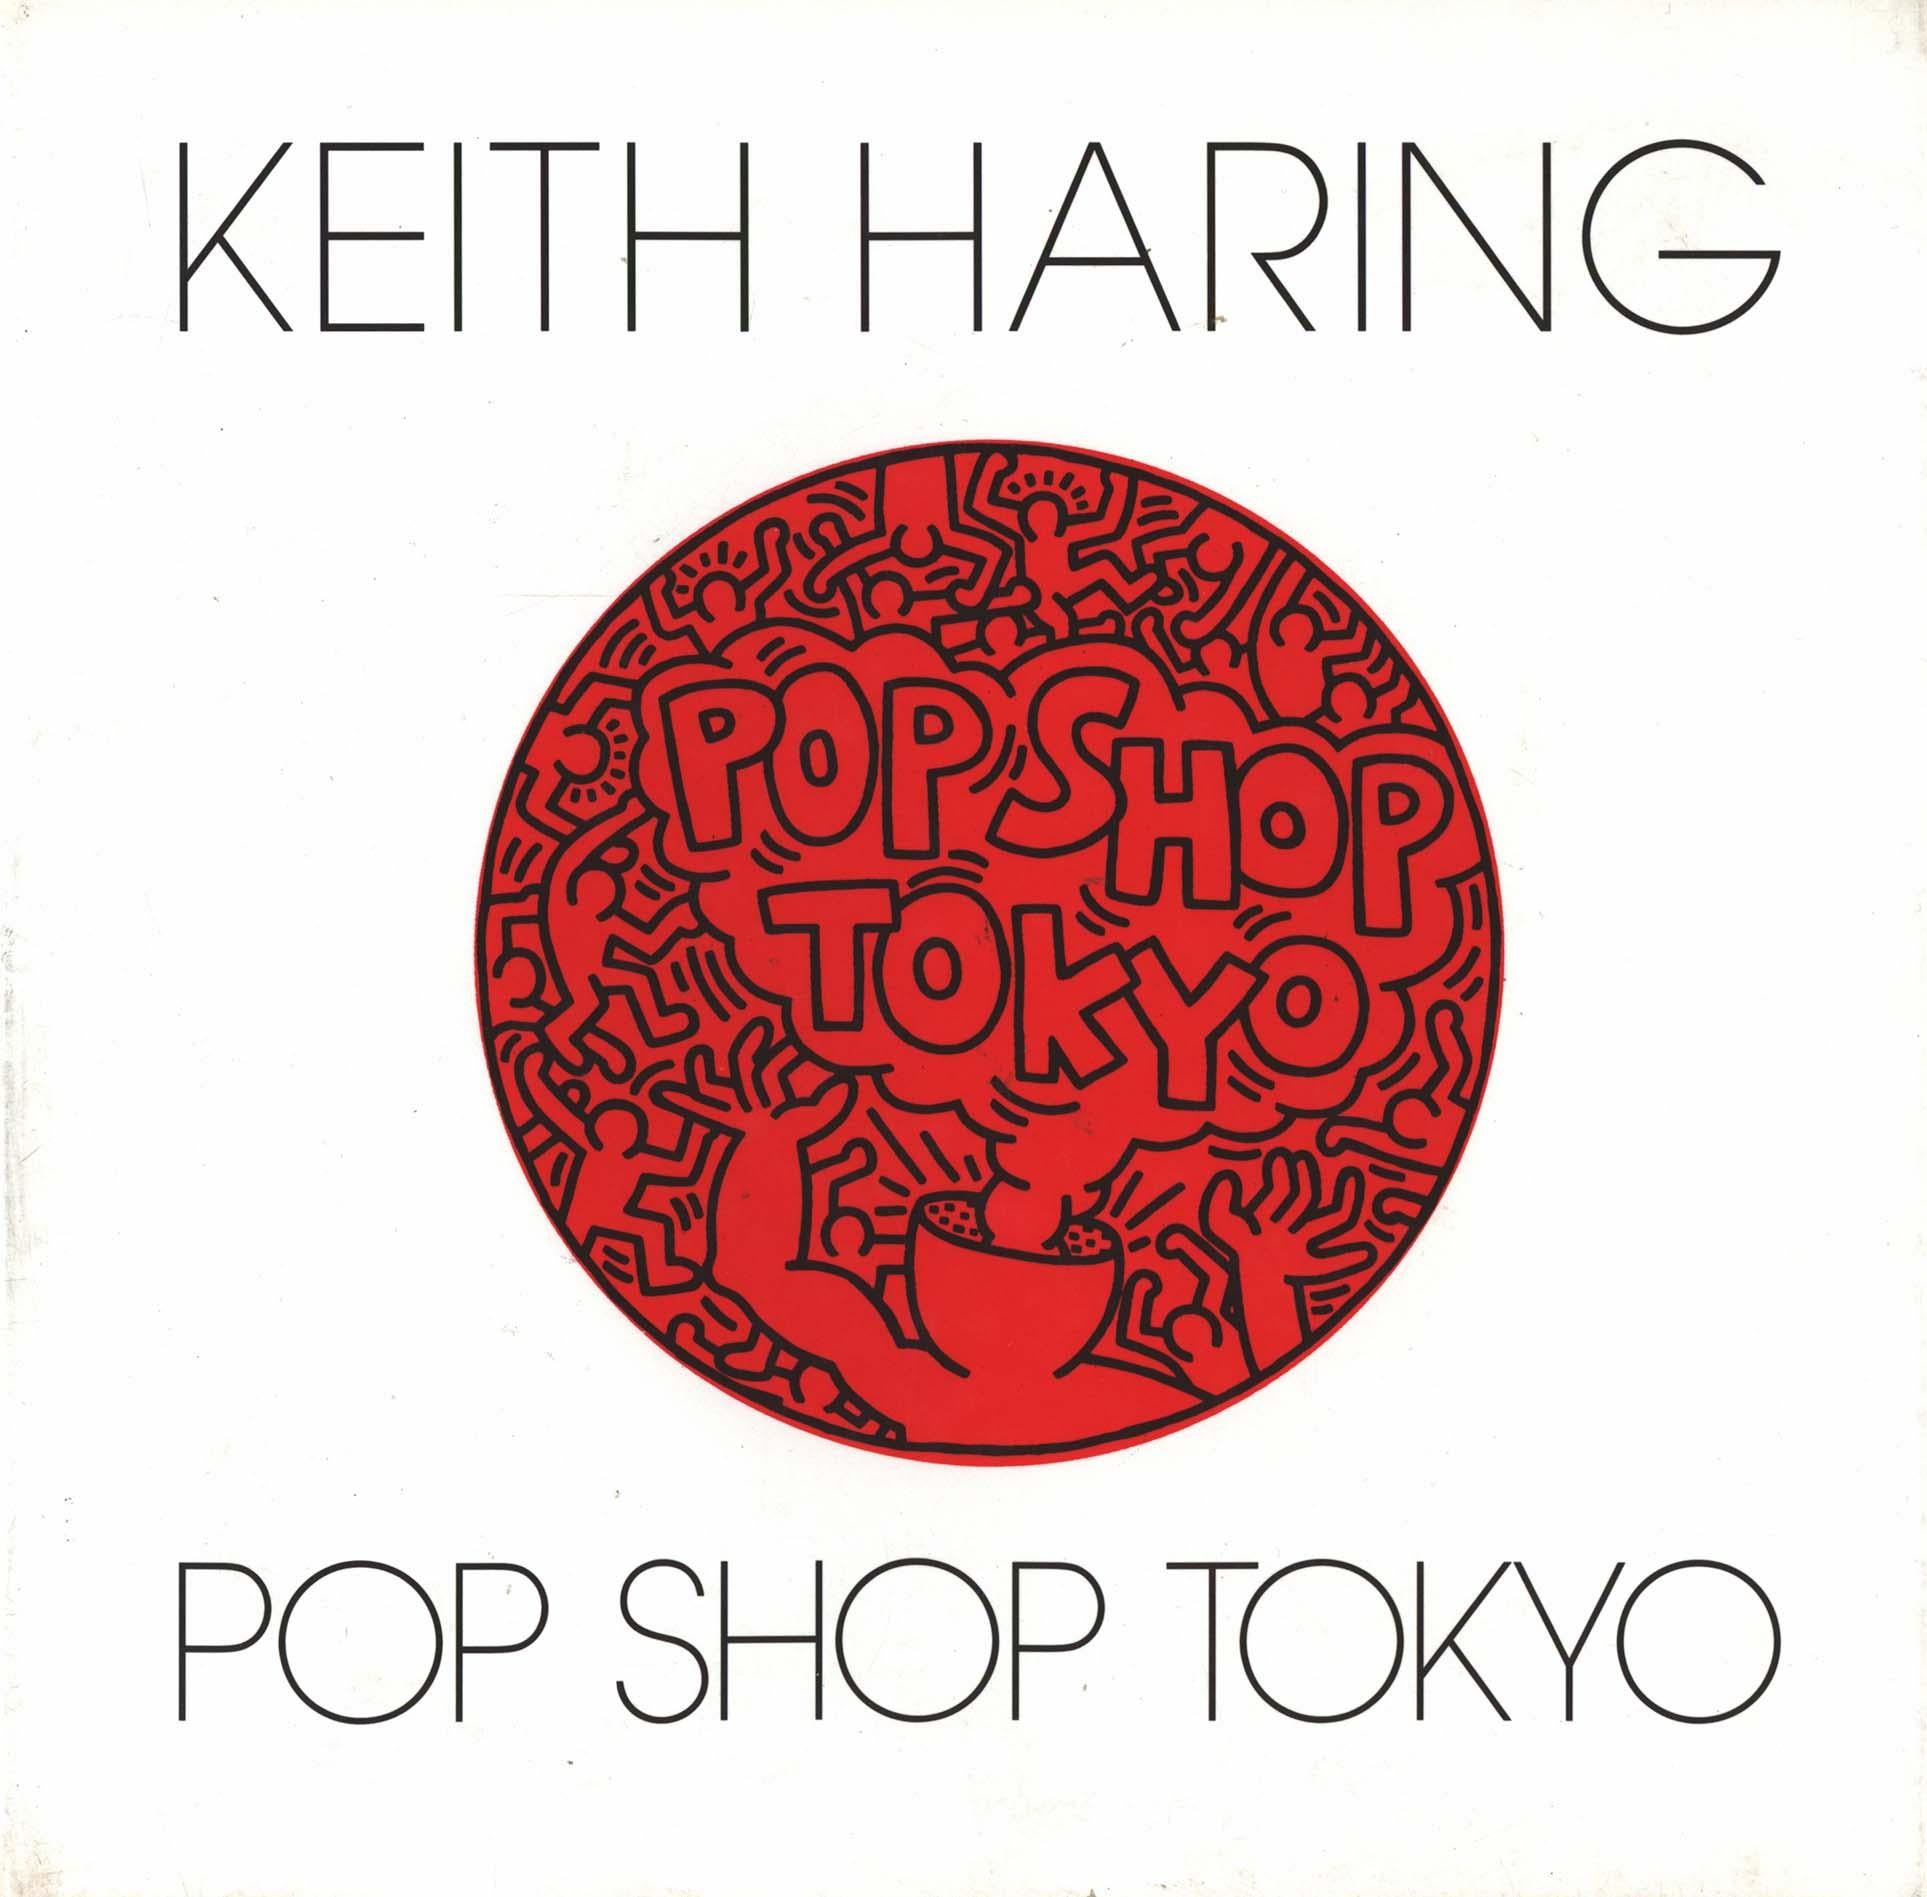 Pop Shop Tokyo von Keith Haring, Tokio 1992 (Monografie)  – Photograph von (after) Keith Haring